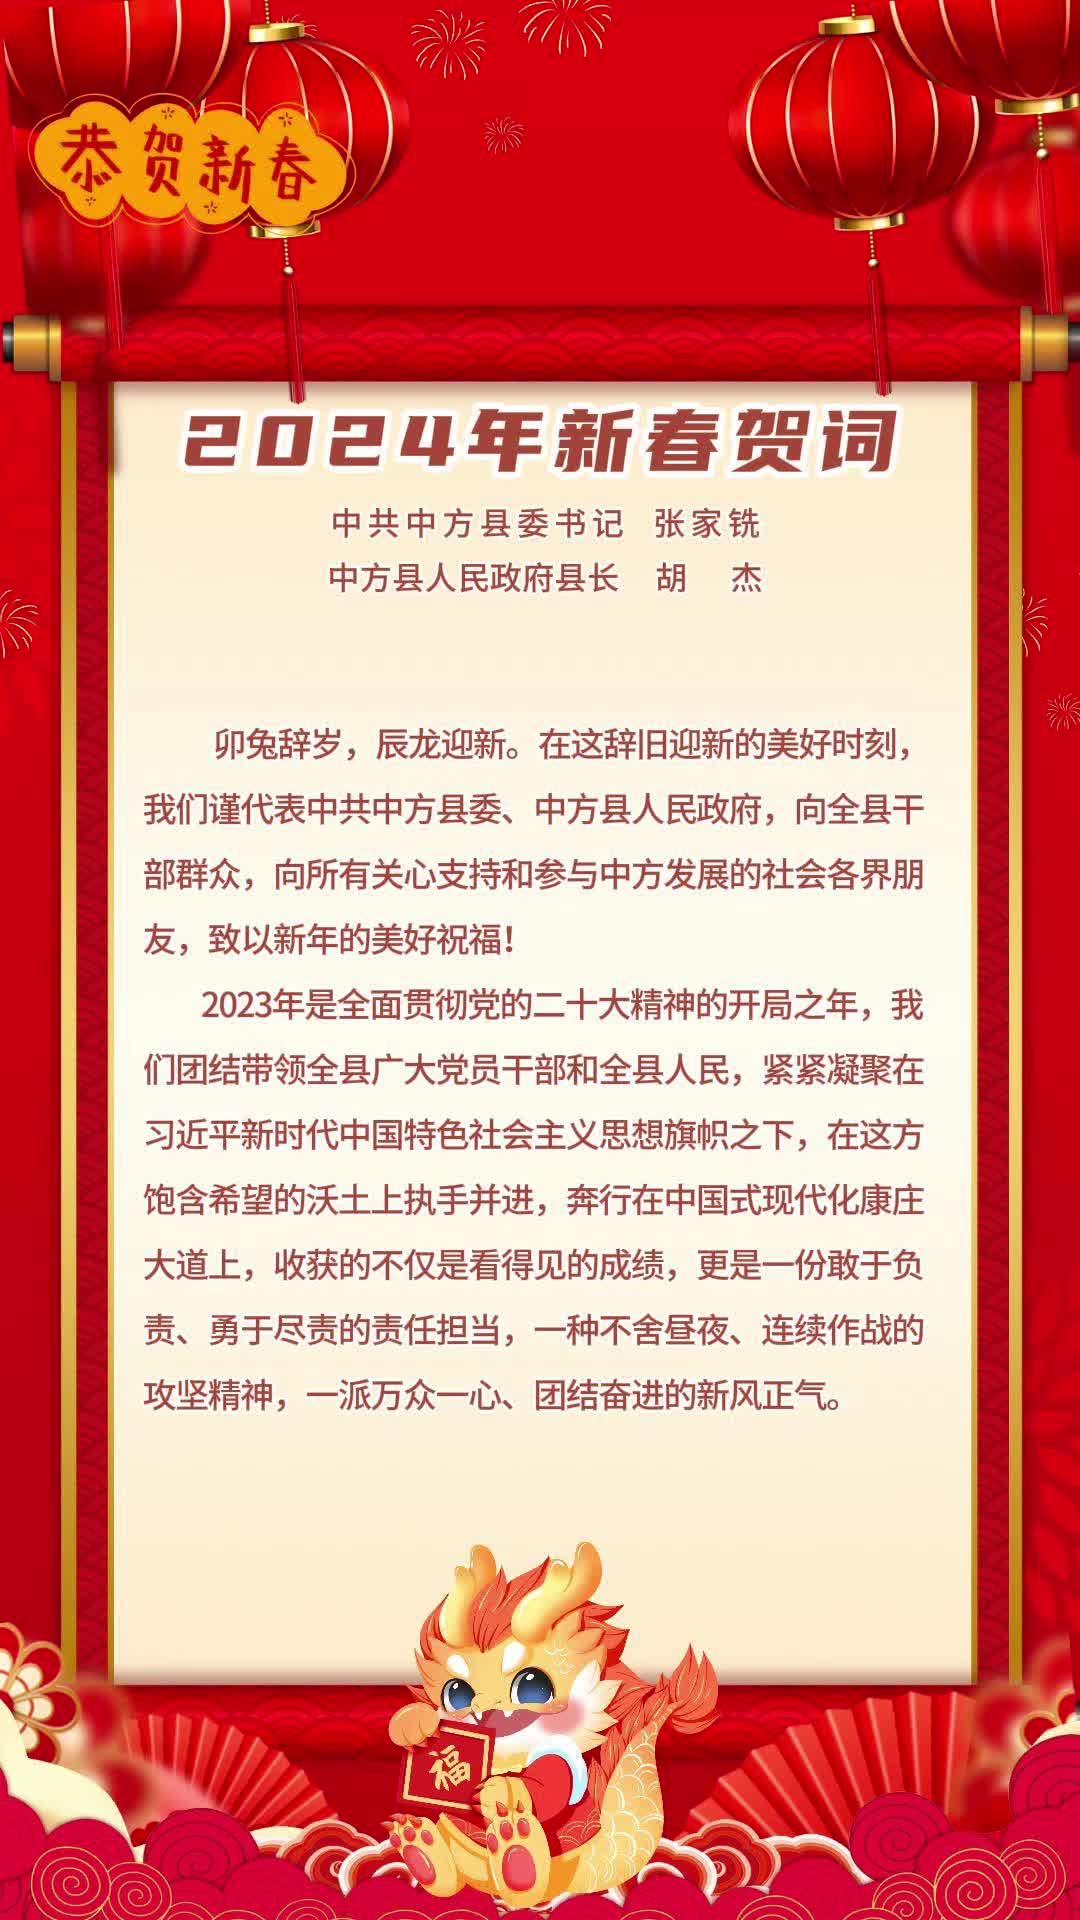 视频|县委书记张家铣、县长胡杰发表新春贺词 向全县人民拜年！